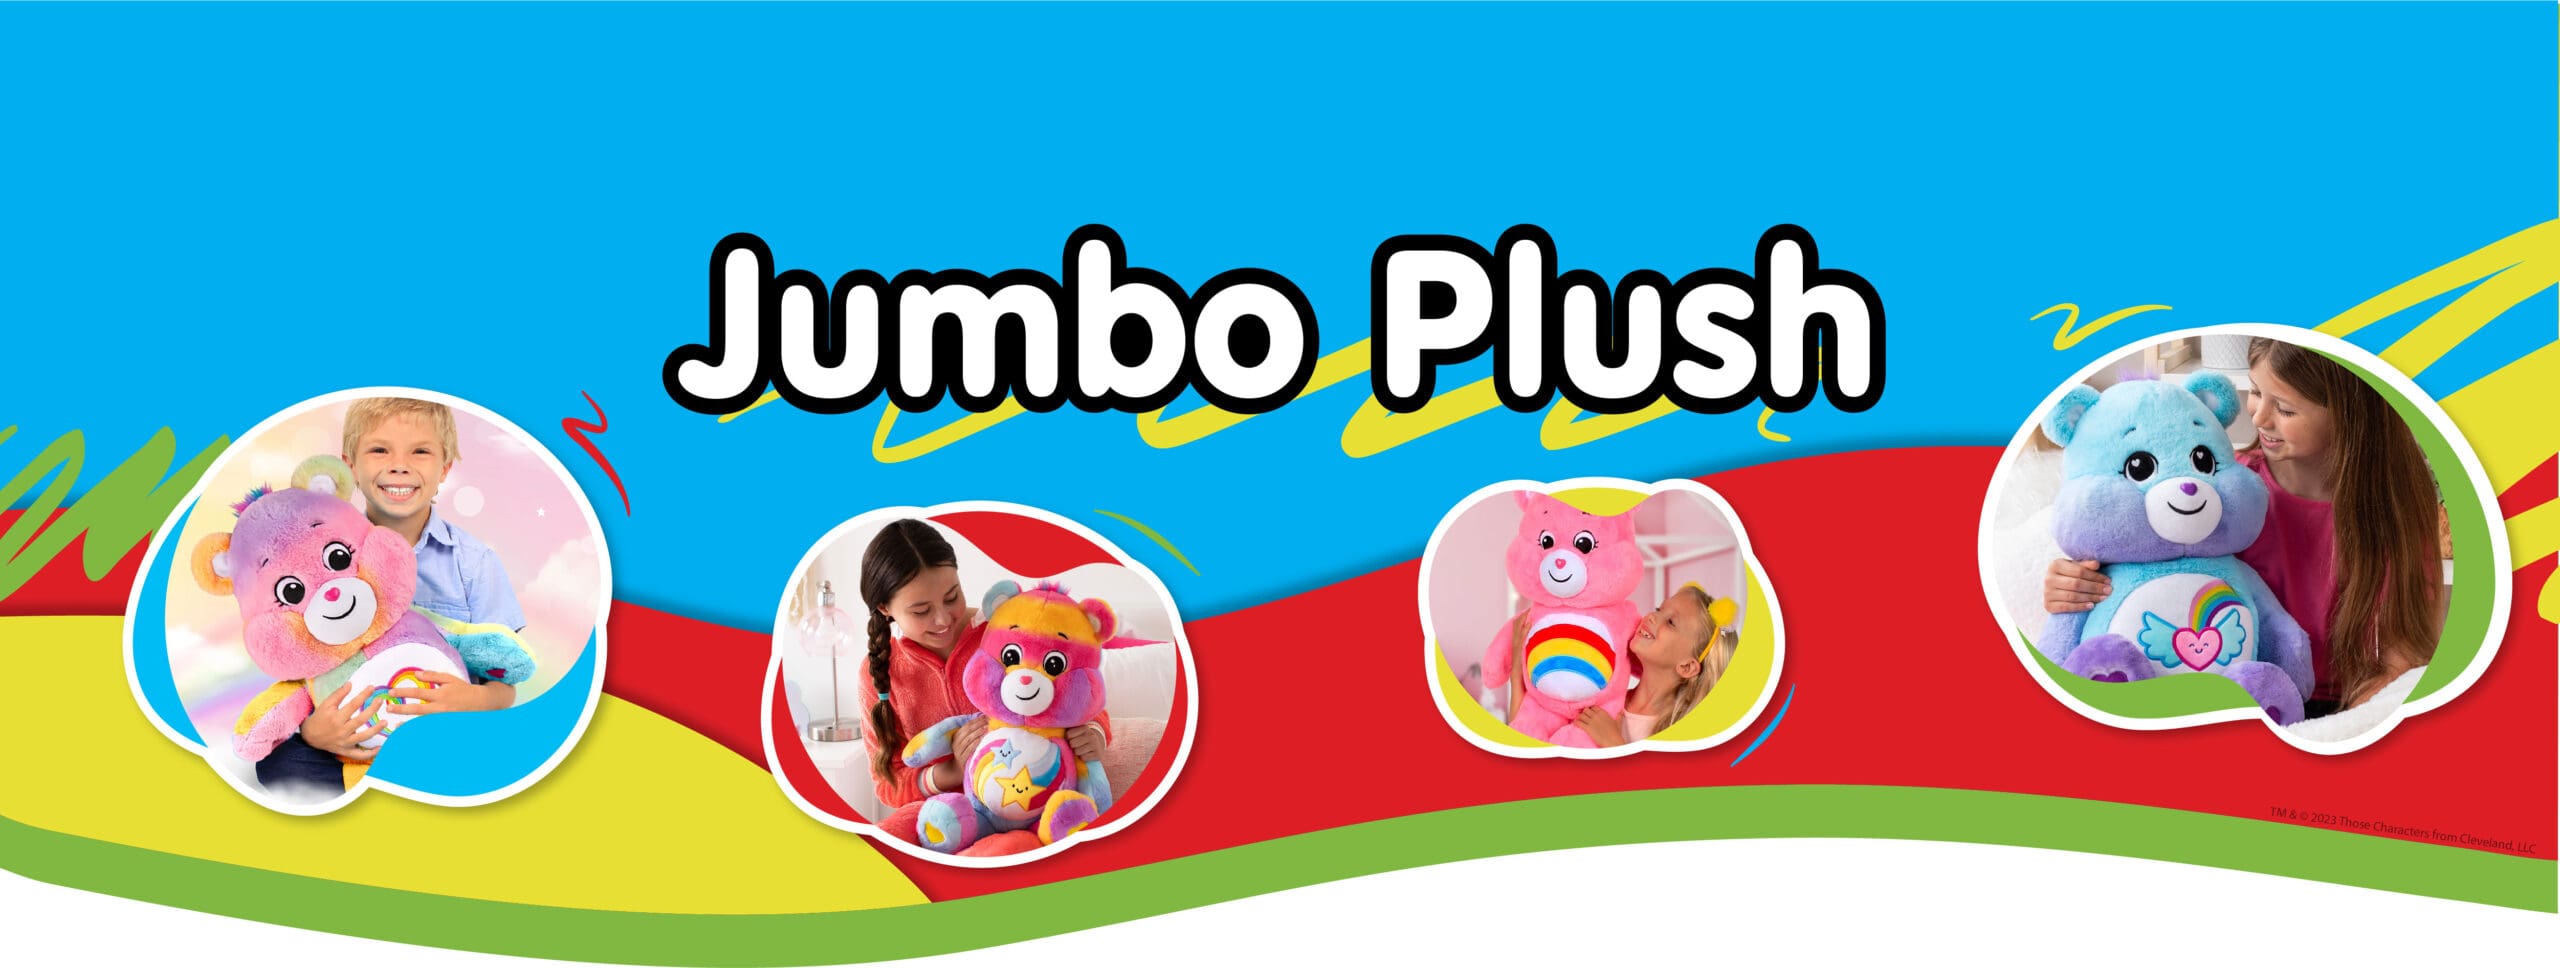 Jumbo Plush Banner